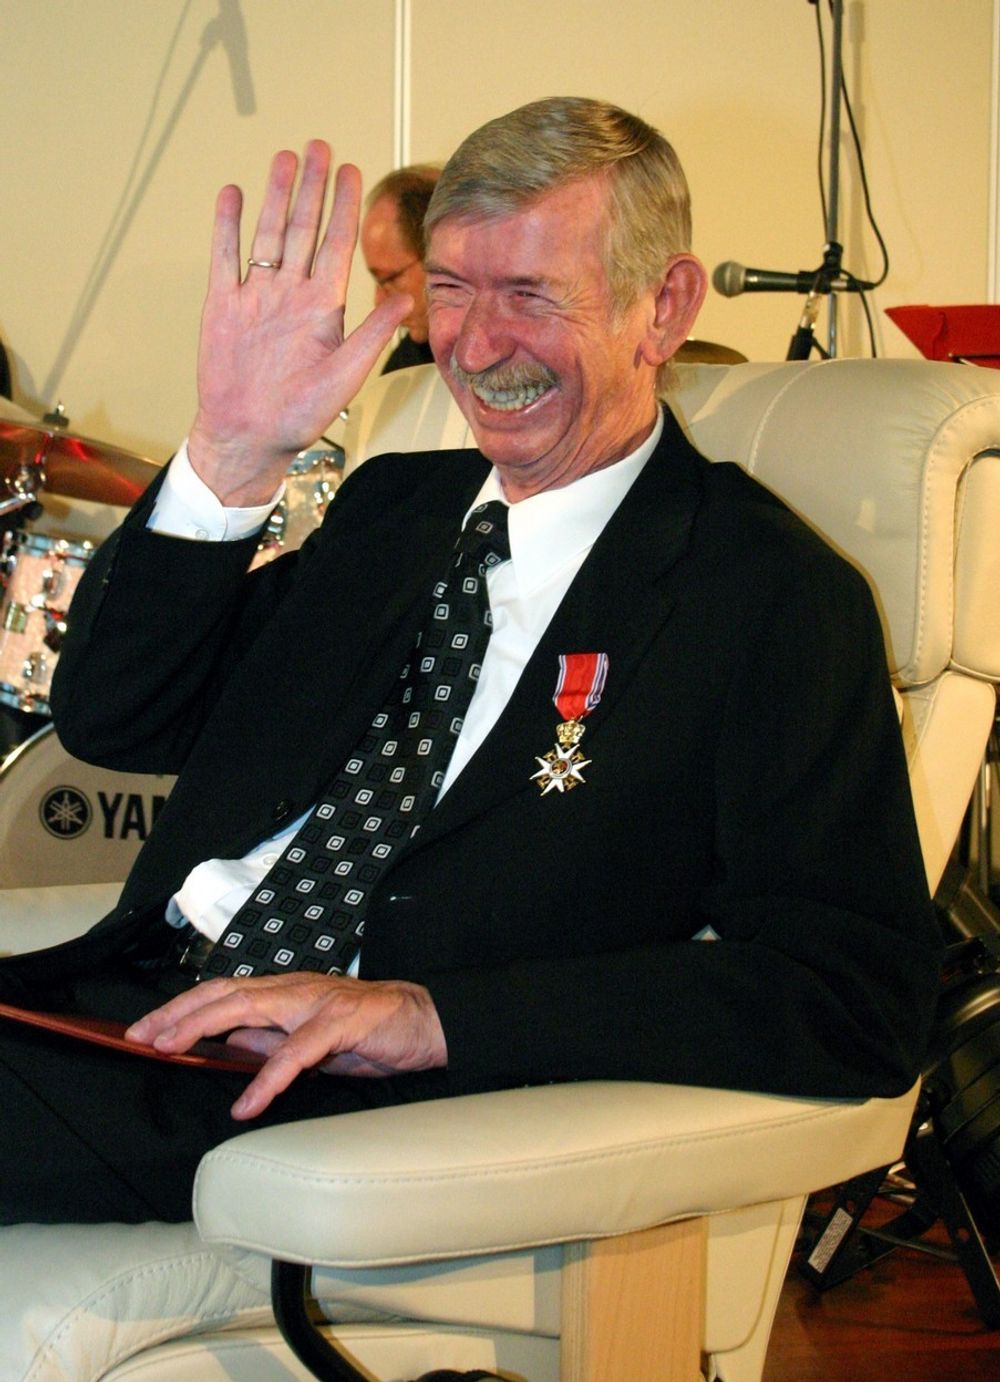 I 2005 ble Jens Petter Ekornes utnevnt til ridder av 1. klasse av Den Kongelige Norske St. Olavs Orden. Han delte æren med sine ansatte, og uttalte at "det var feil at de skulle slite livet av seg mens han skulle gå rundt og dingle med medaljer".